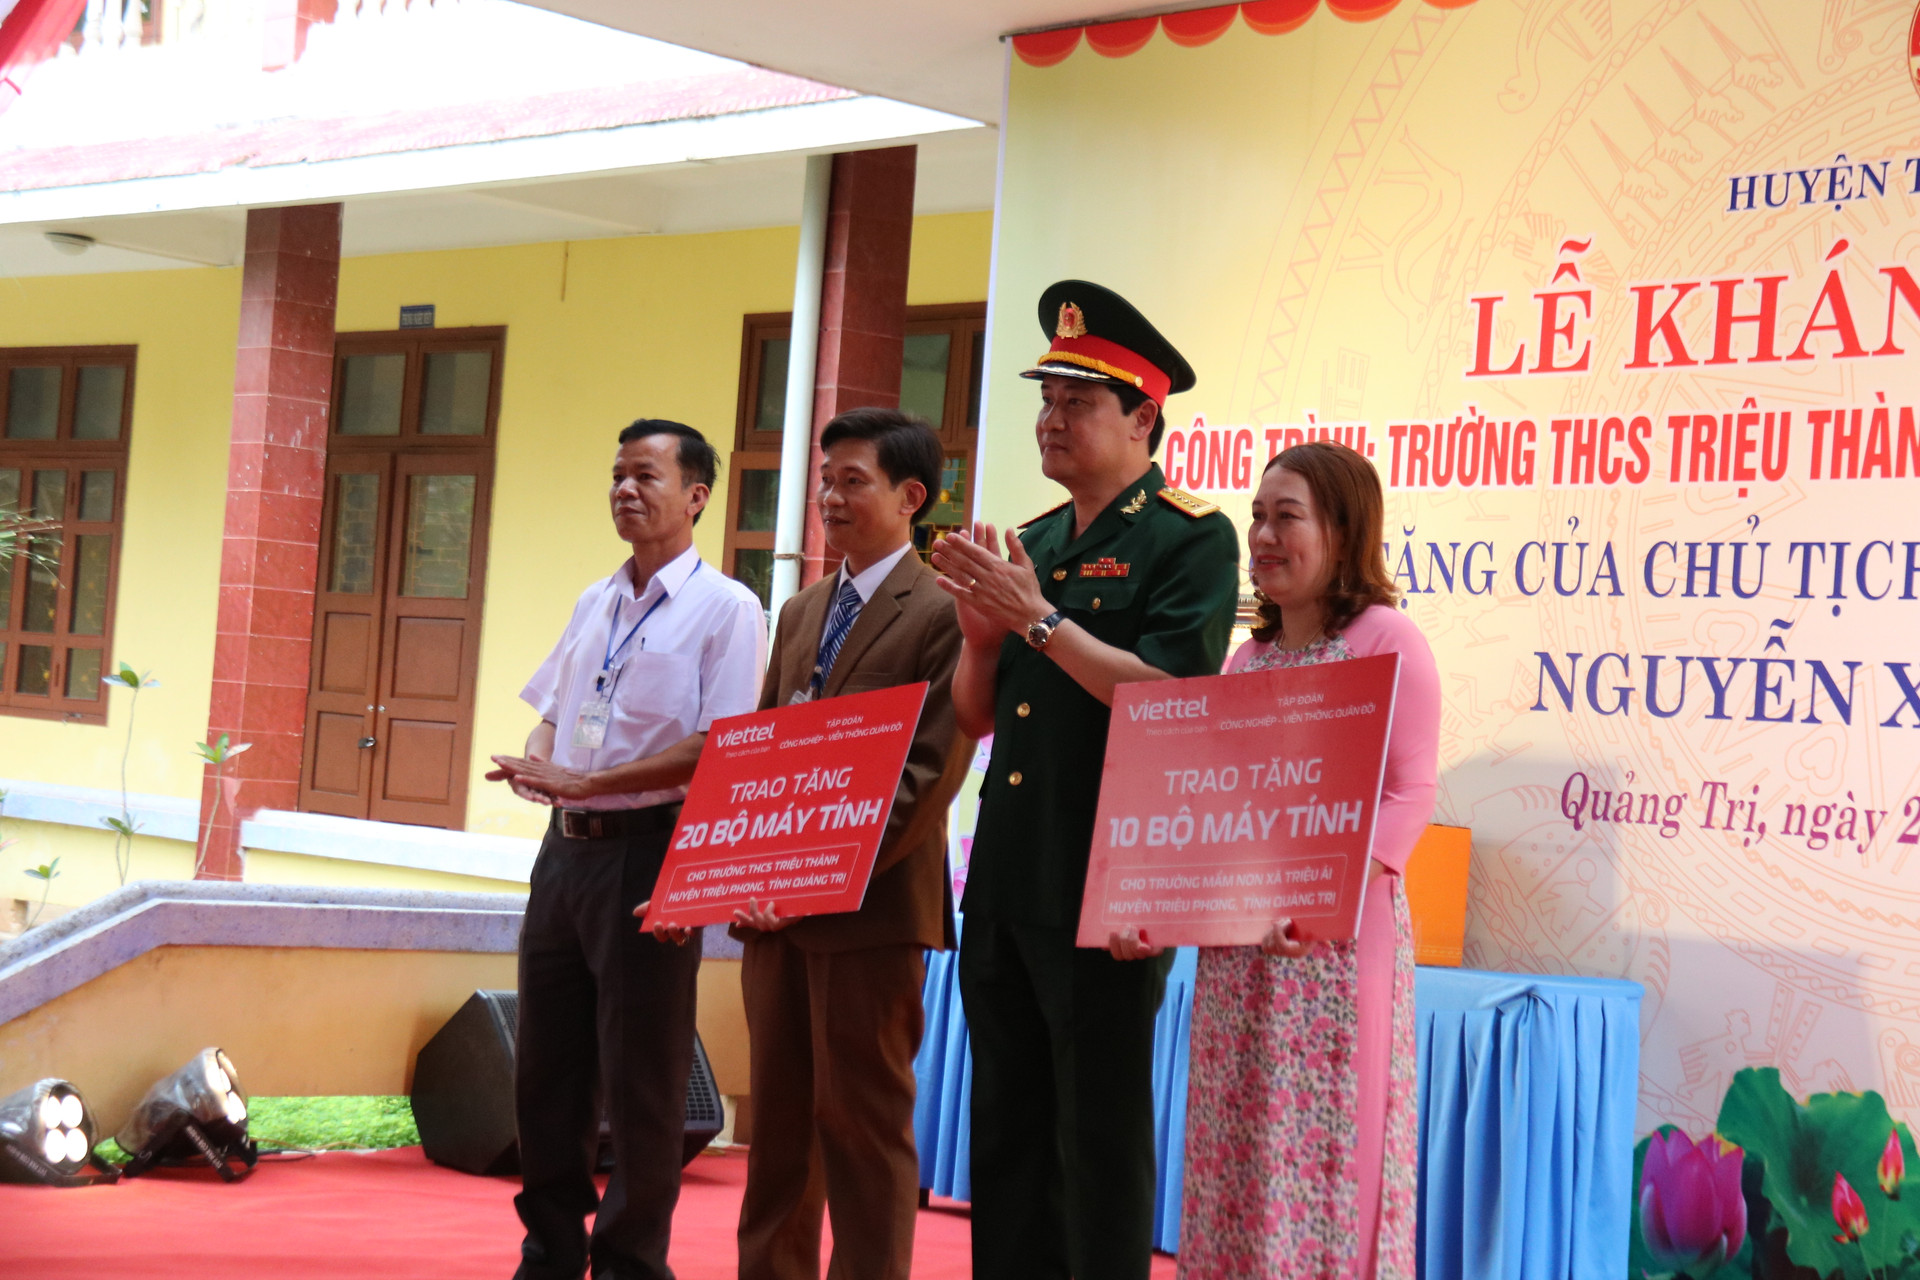 Tập đoàn Công nghiệp - Viễn thông quân đội trao tặng máy tính cho trường THCS Triệu Thành (20 bộ) và trường Mầm non xã Triệu Ái (10 bộ).